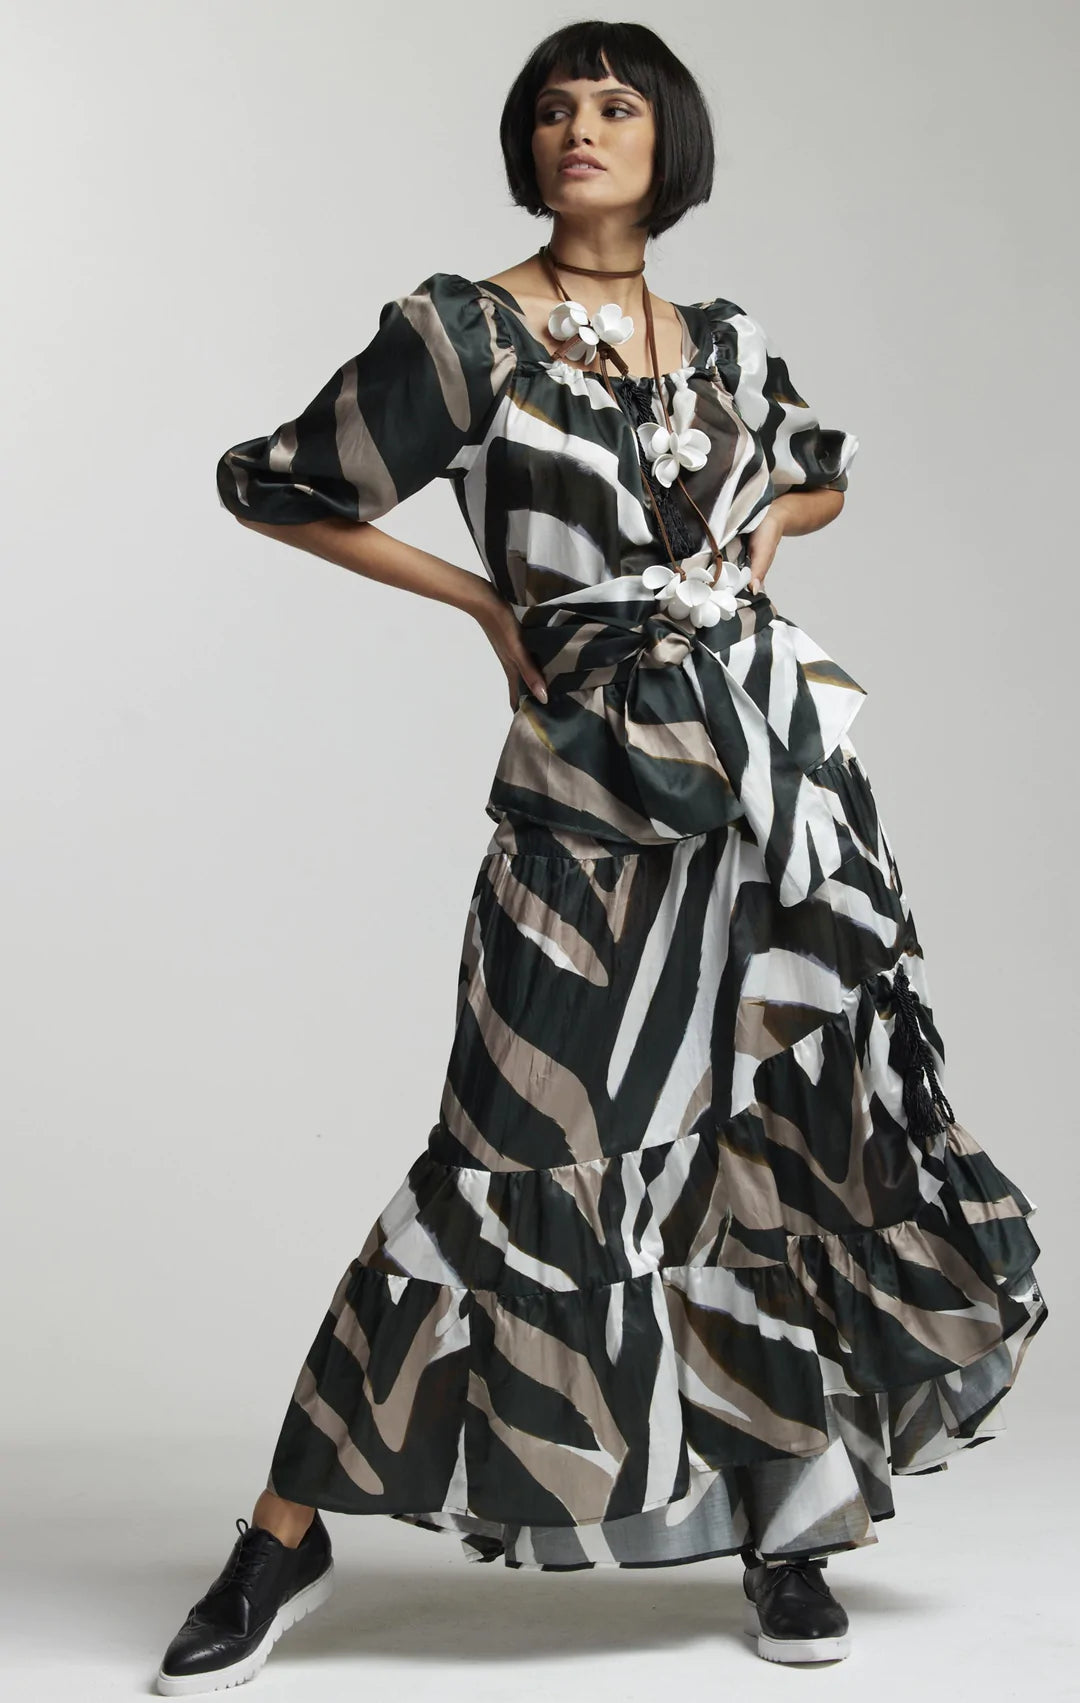 Paula Ryan Layered Skirt - Maxi Zebra